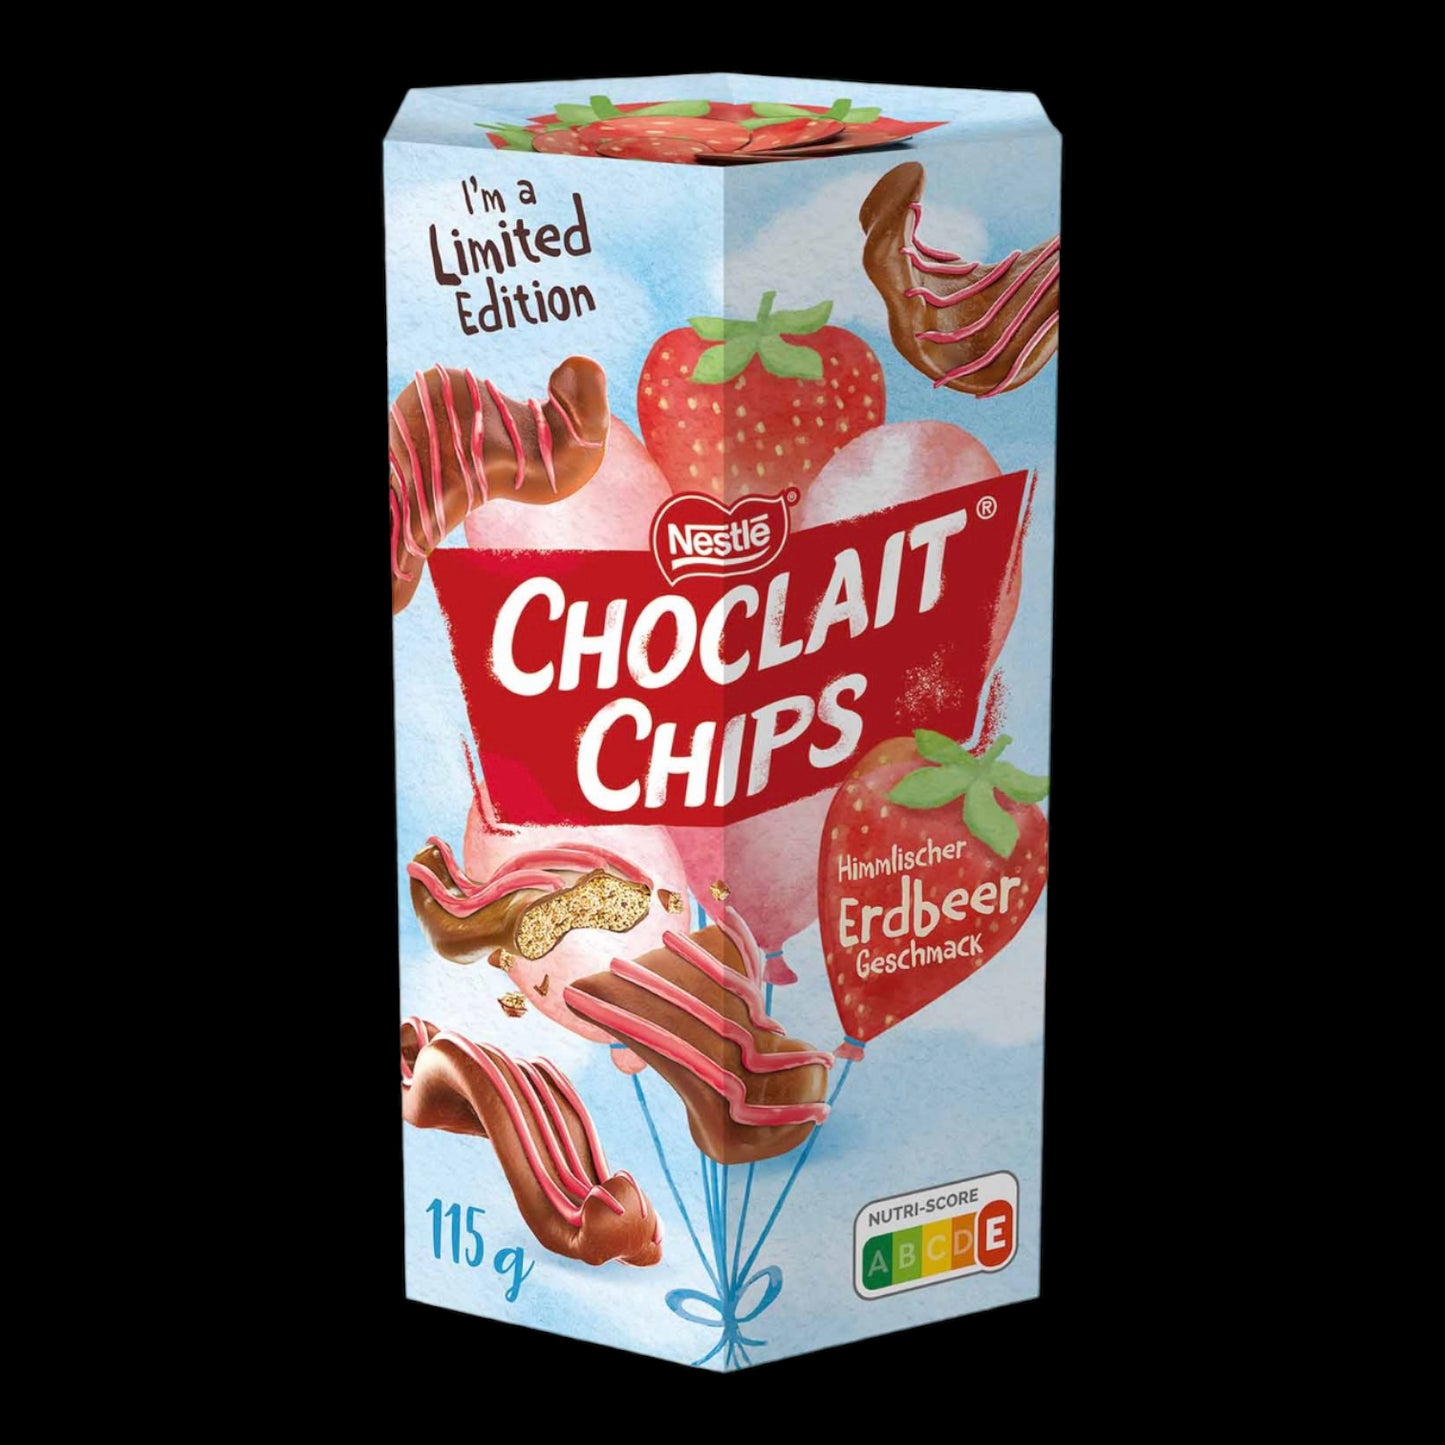 Choclait Chips Erdbeer 115g